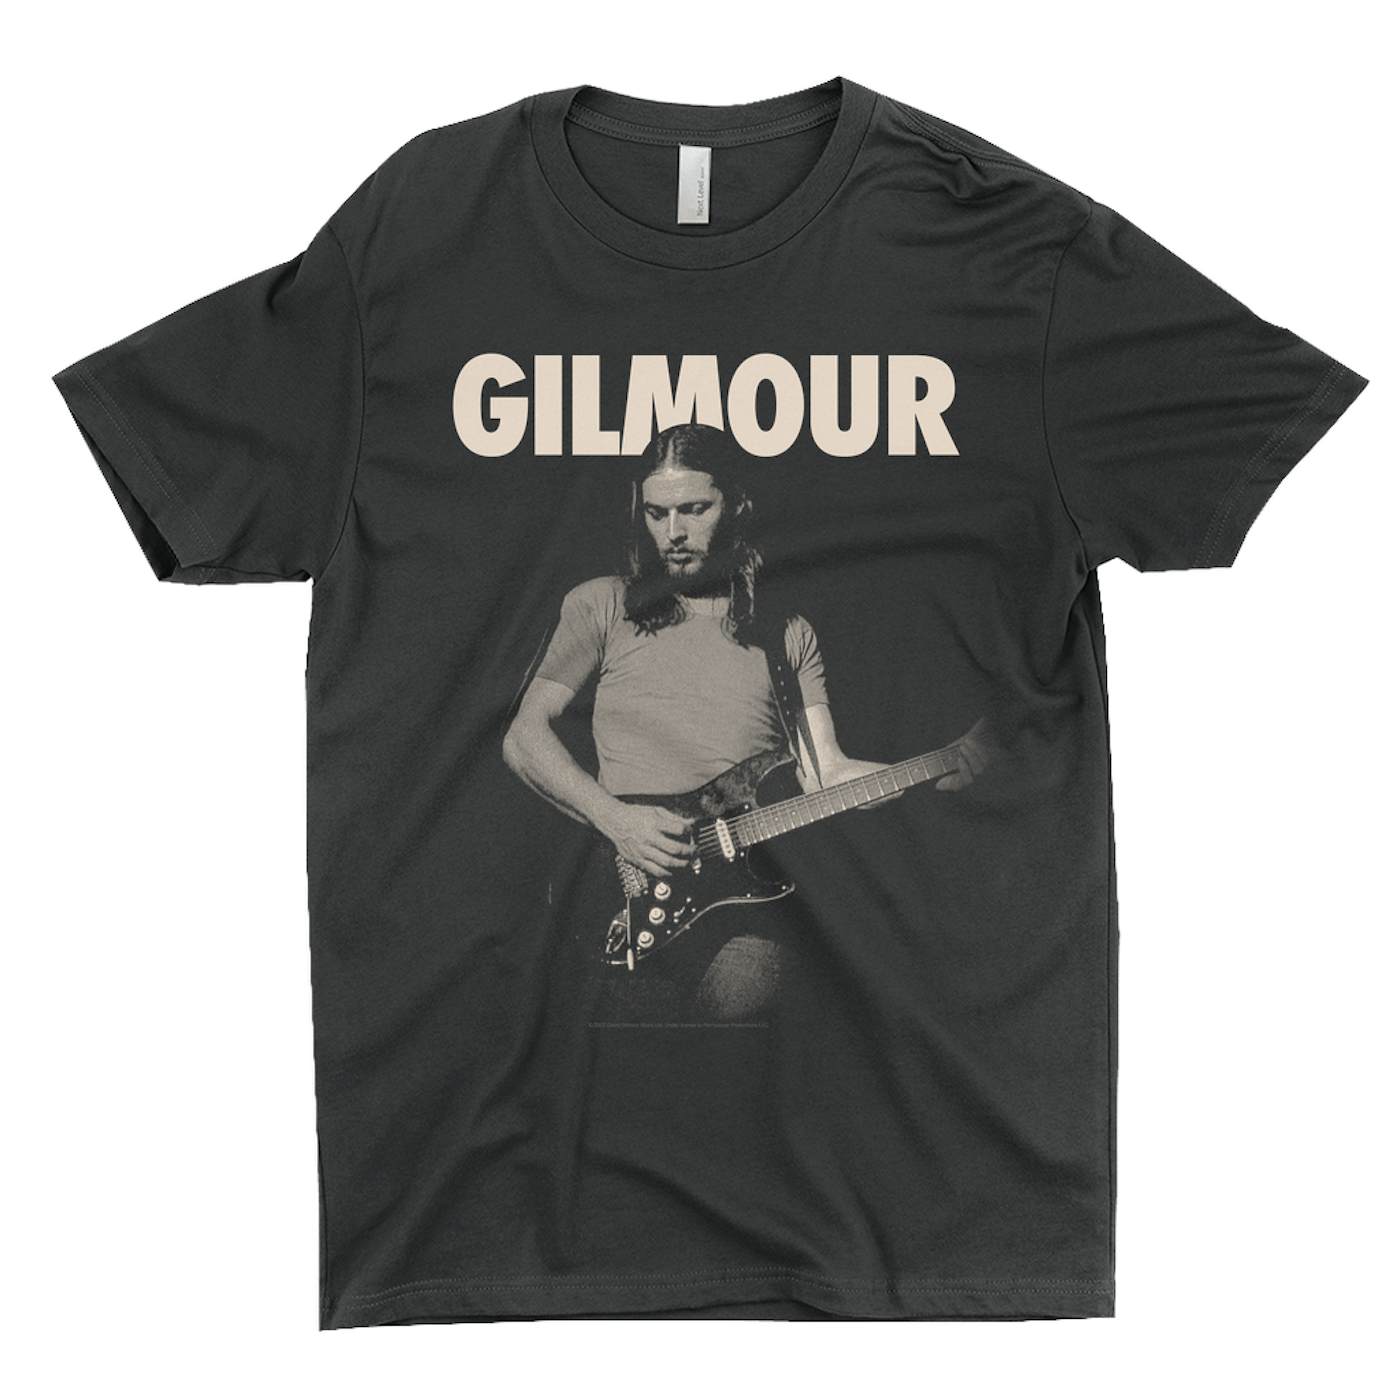 David Gilmour T-Shirt | Young David Gilmour and Bold Logo David Gilmour Shirt